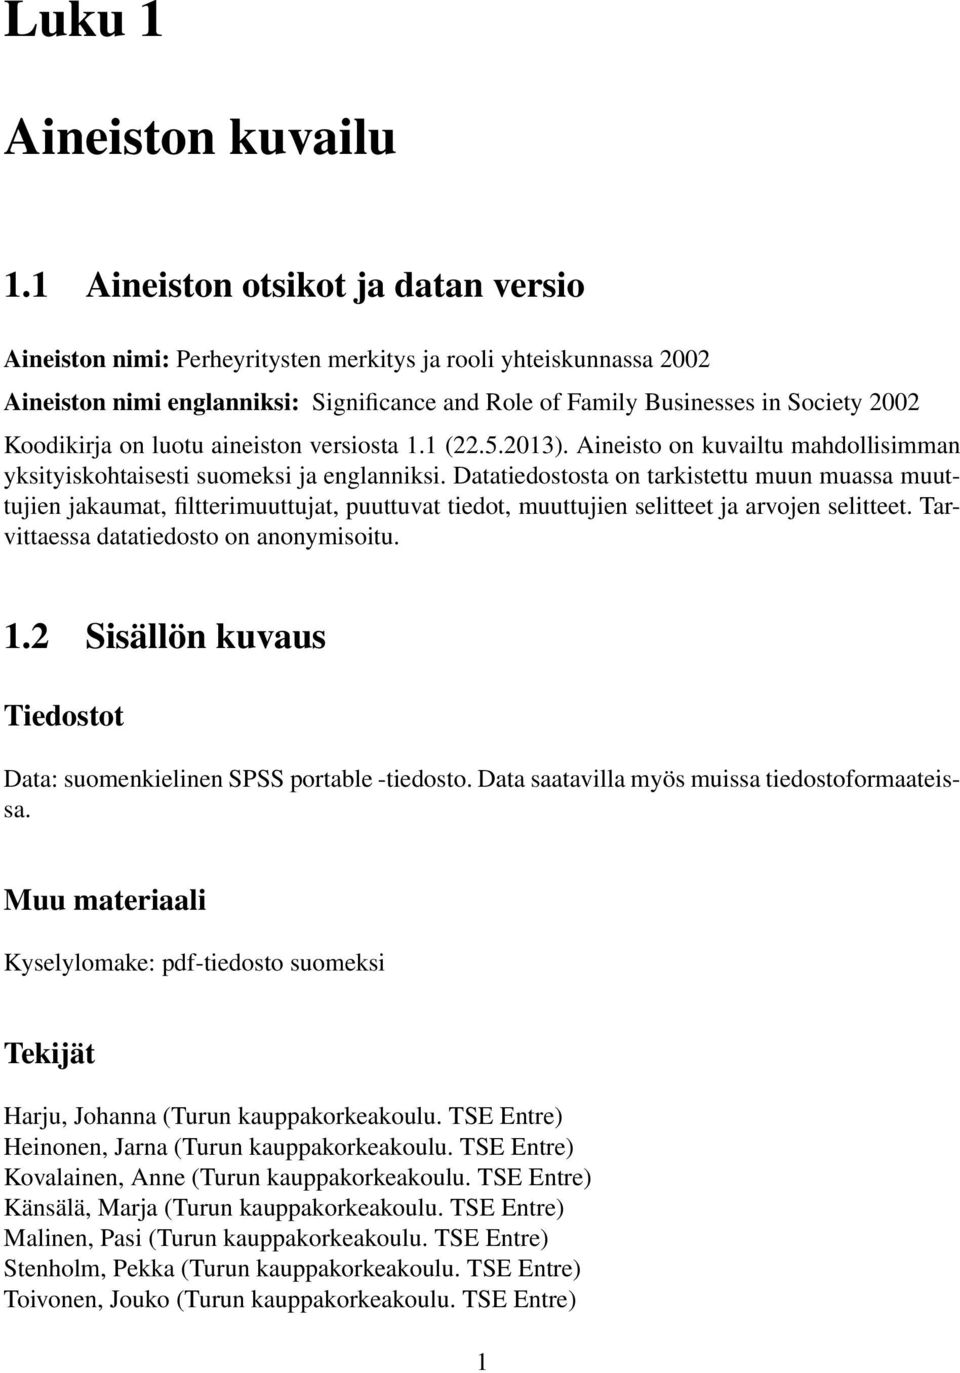 Koodikirja on luotu aineiston versiosta 1.1 (22.5.2013). Aineisto on kuvailtu mahdollisimman yksityiskohtaisesti suomeksi ja englanniksi.